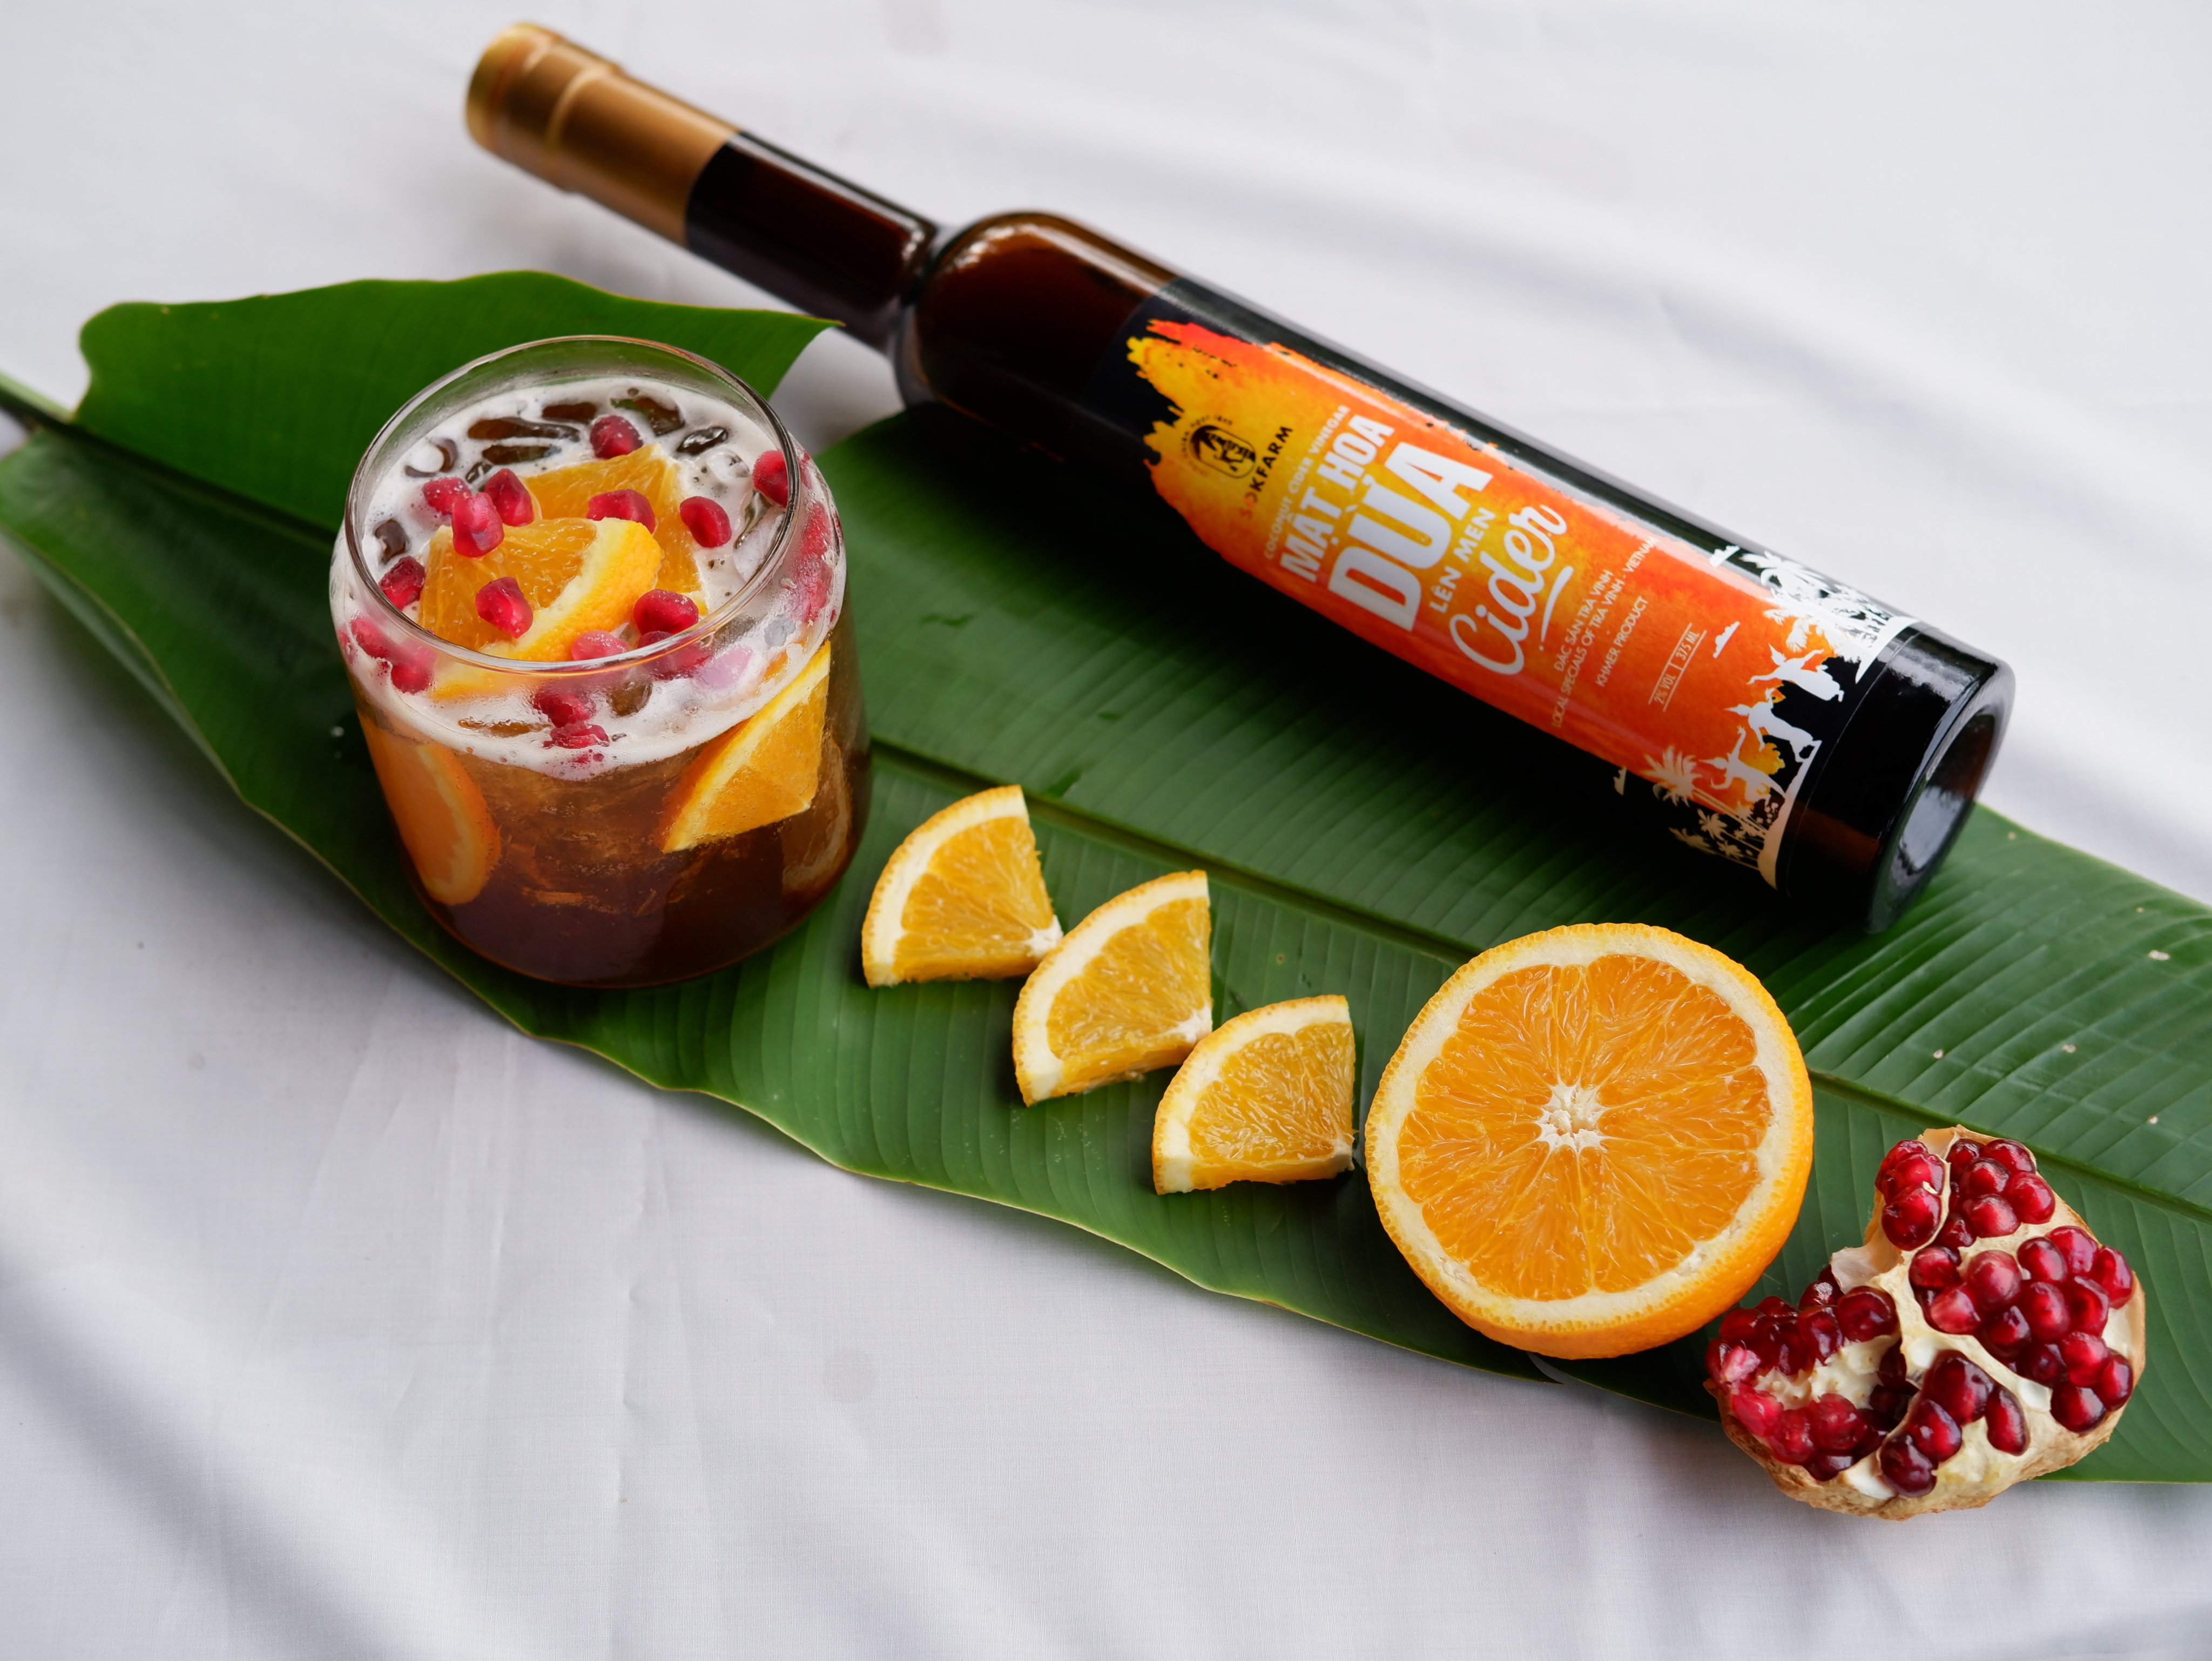 Cider mật hoa dừa Sokfarm - Thức uống lên men dành cho phái đẹp